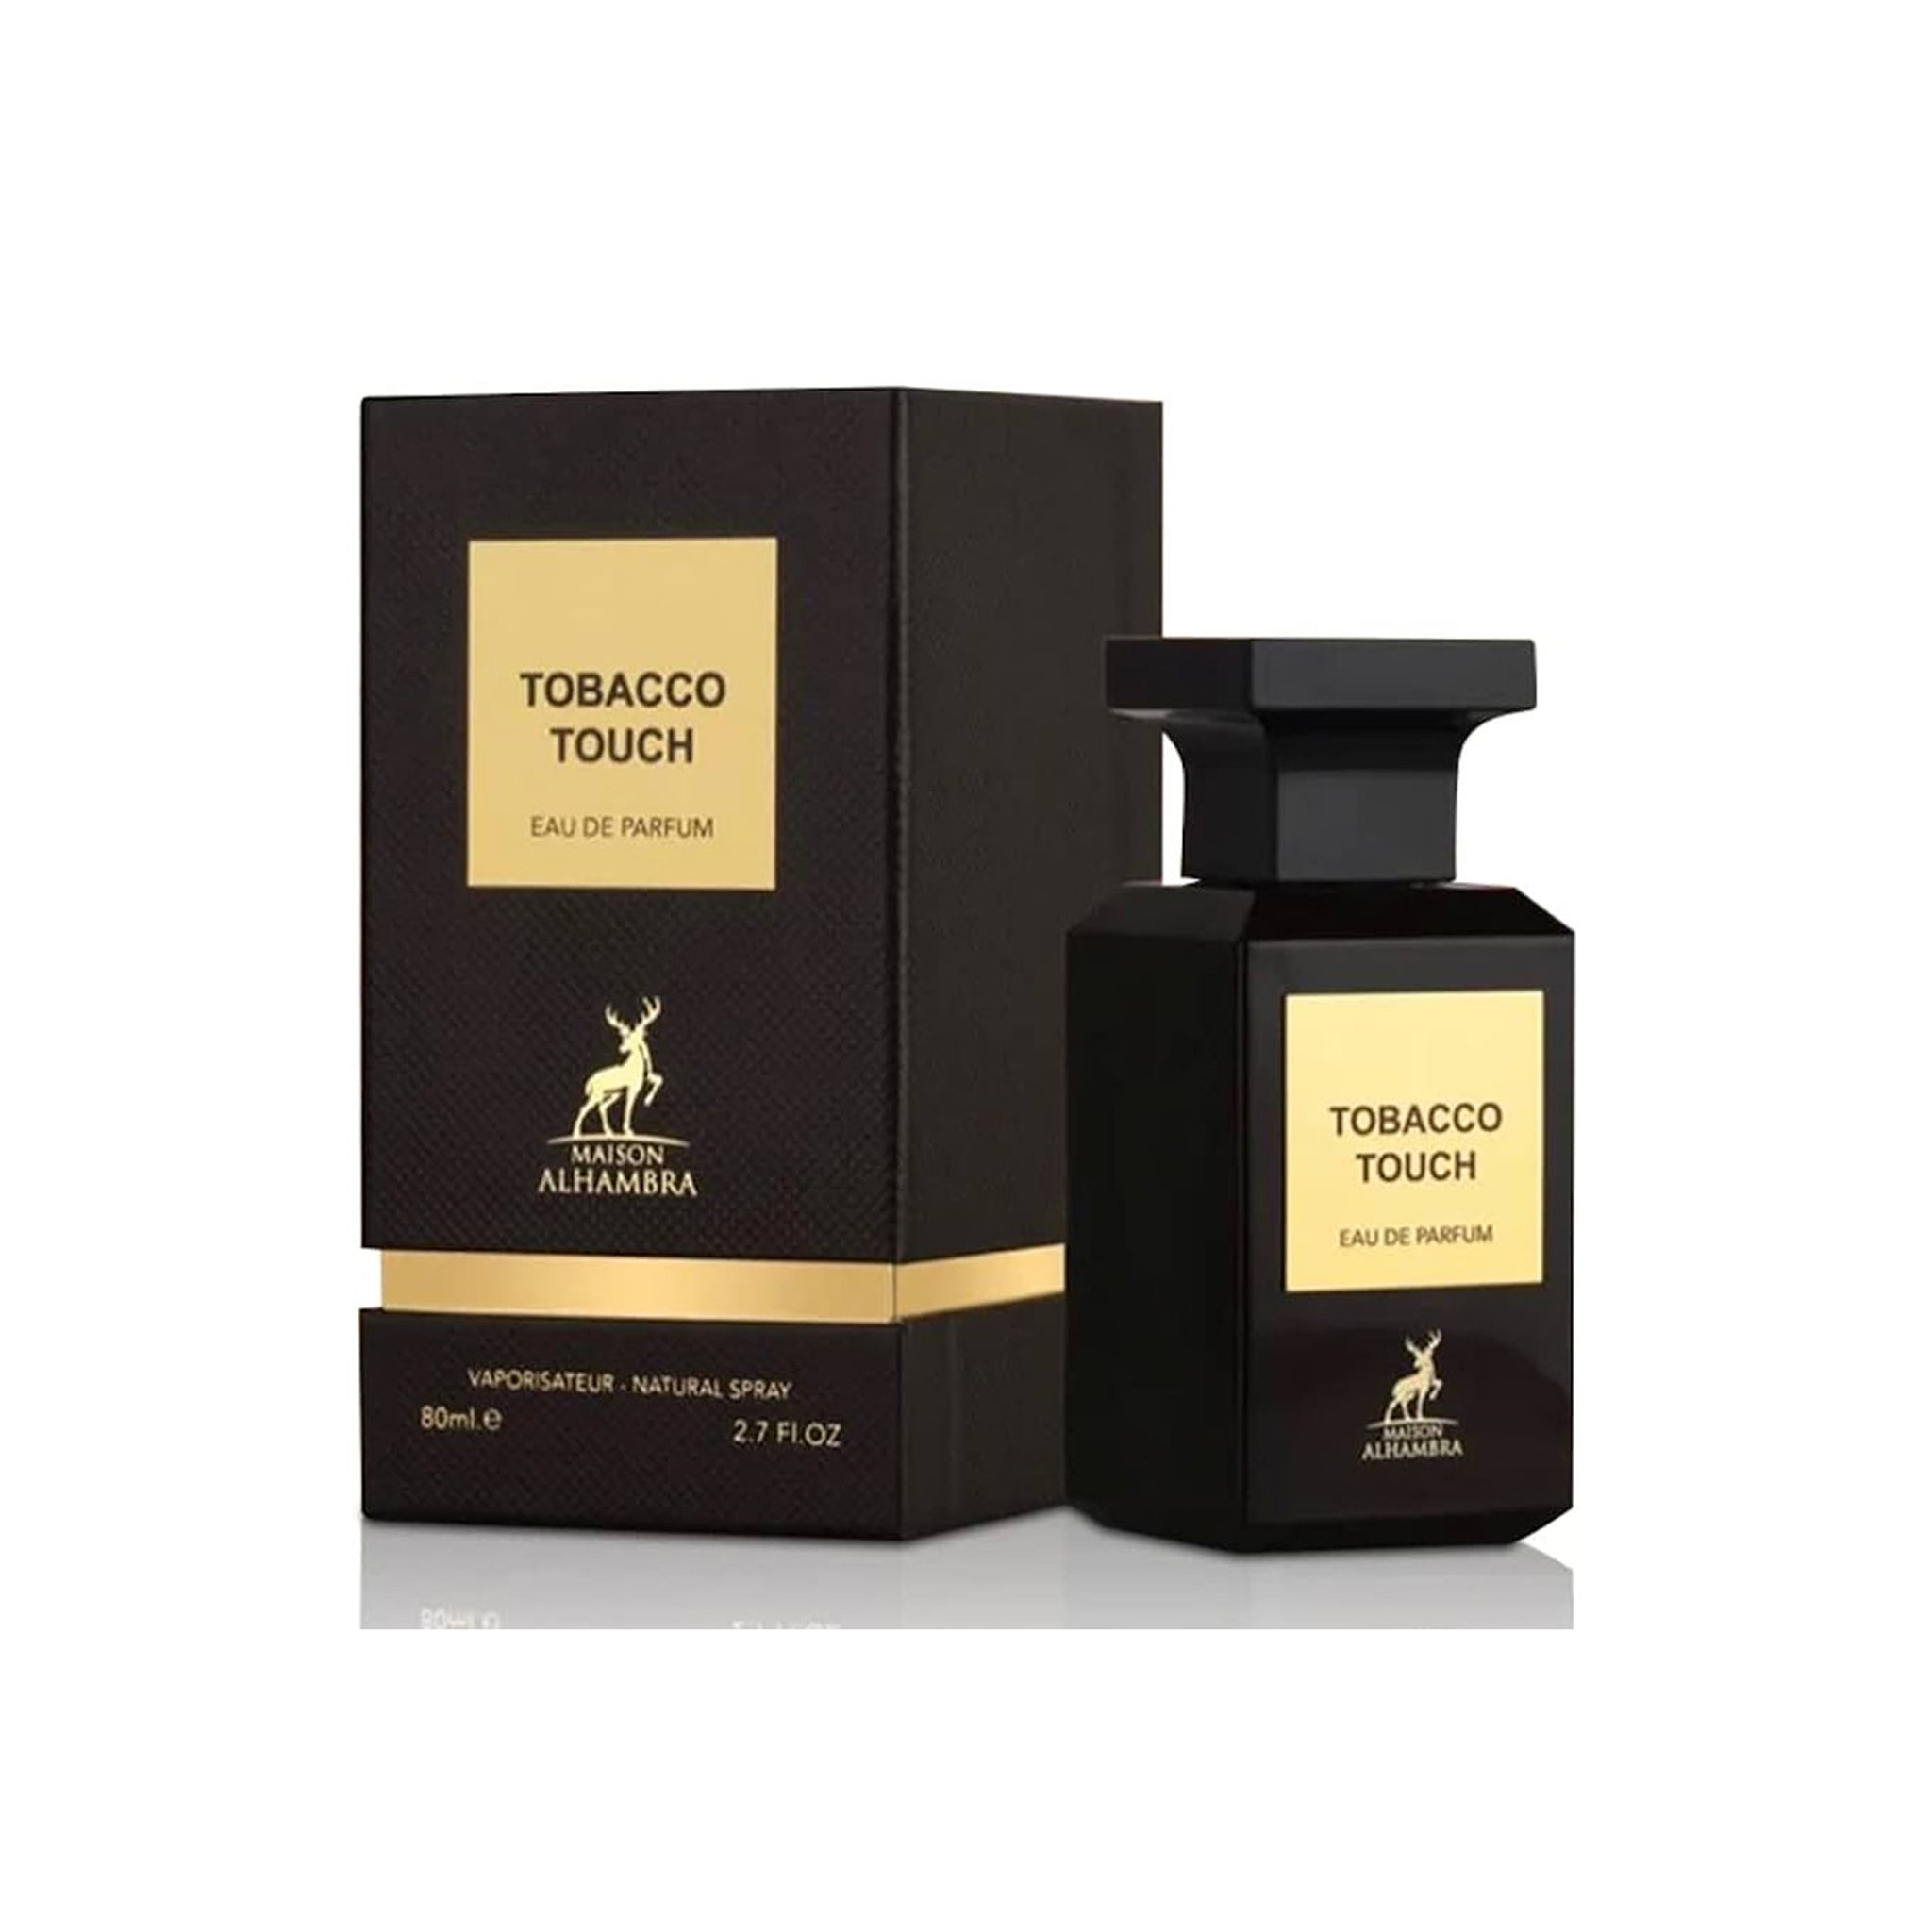 Tobacco Touch (Eau De Parfum 80ml) by Maison Alhambra